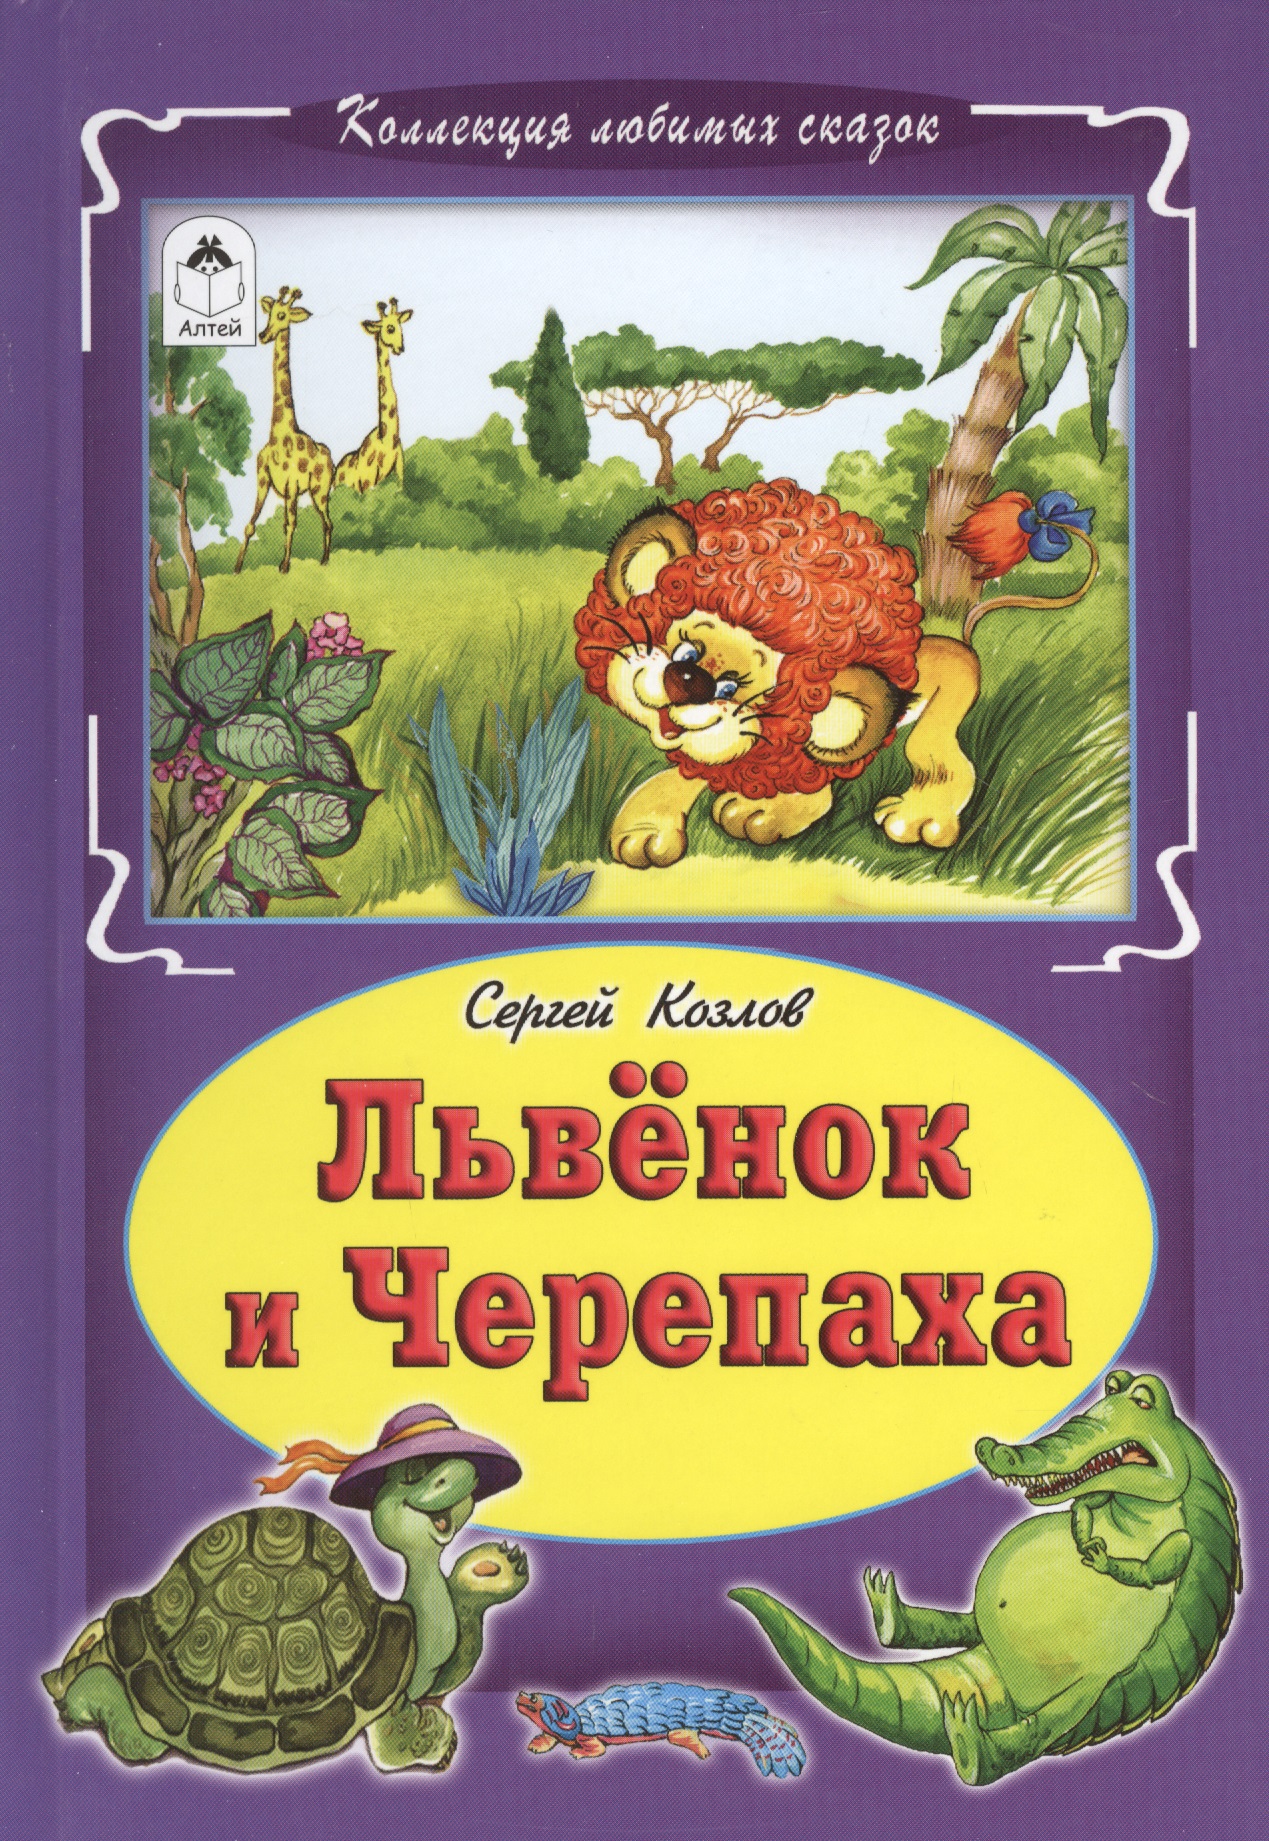 Читать сказку черепаха. Львенок и черепаха книга Козлов.